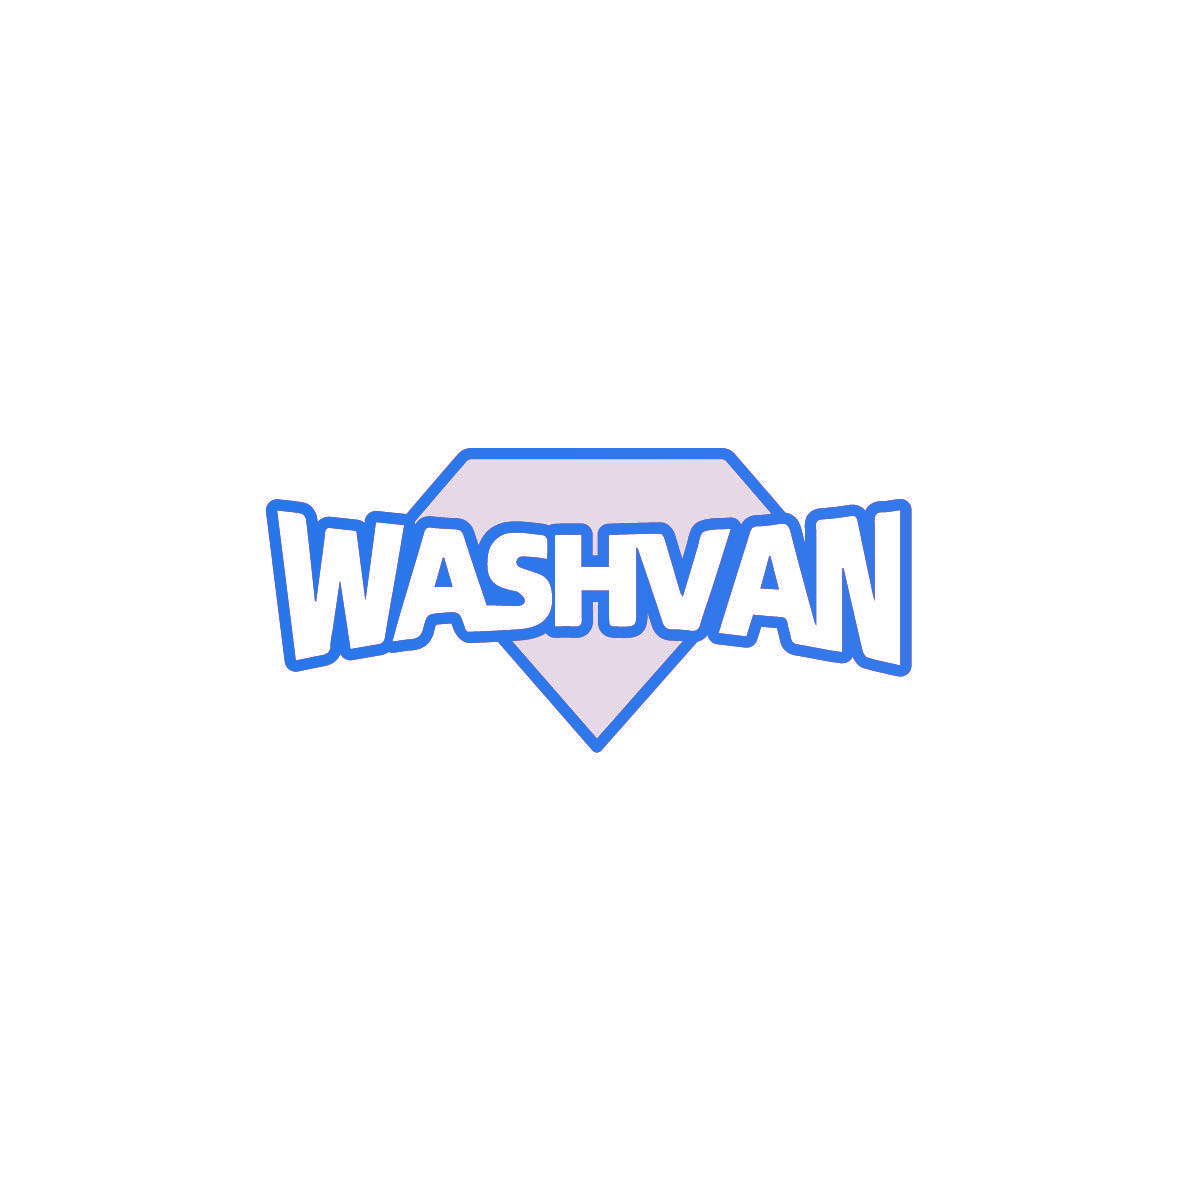 WASHVAN